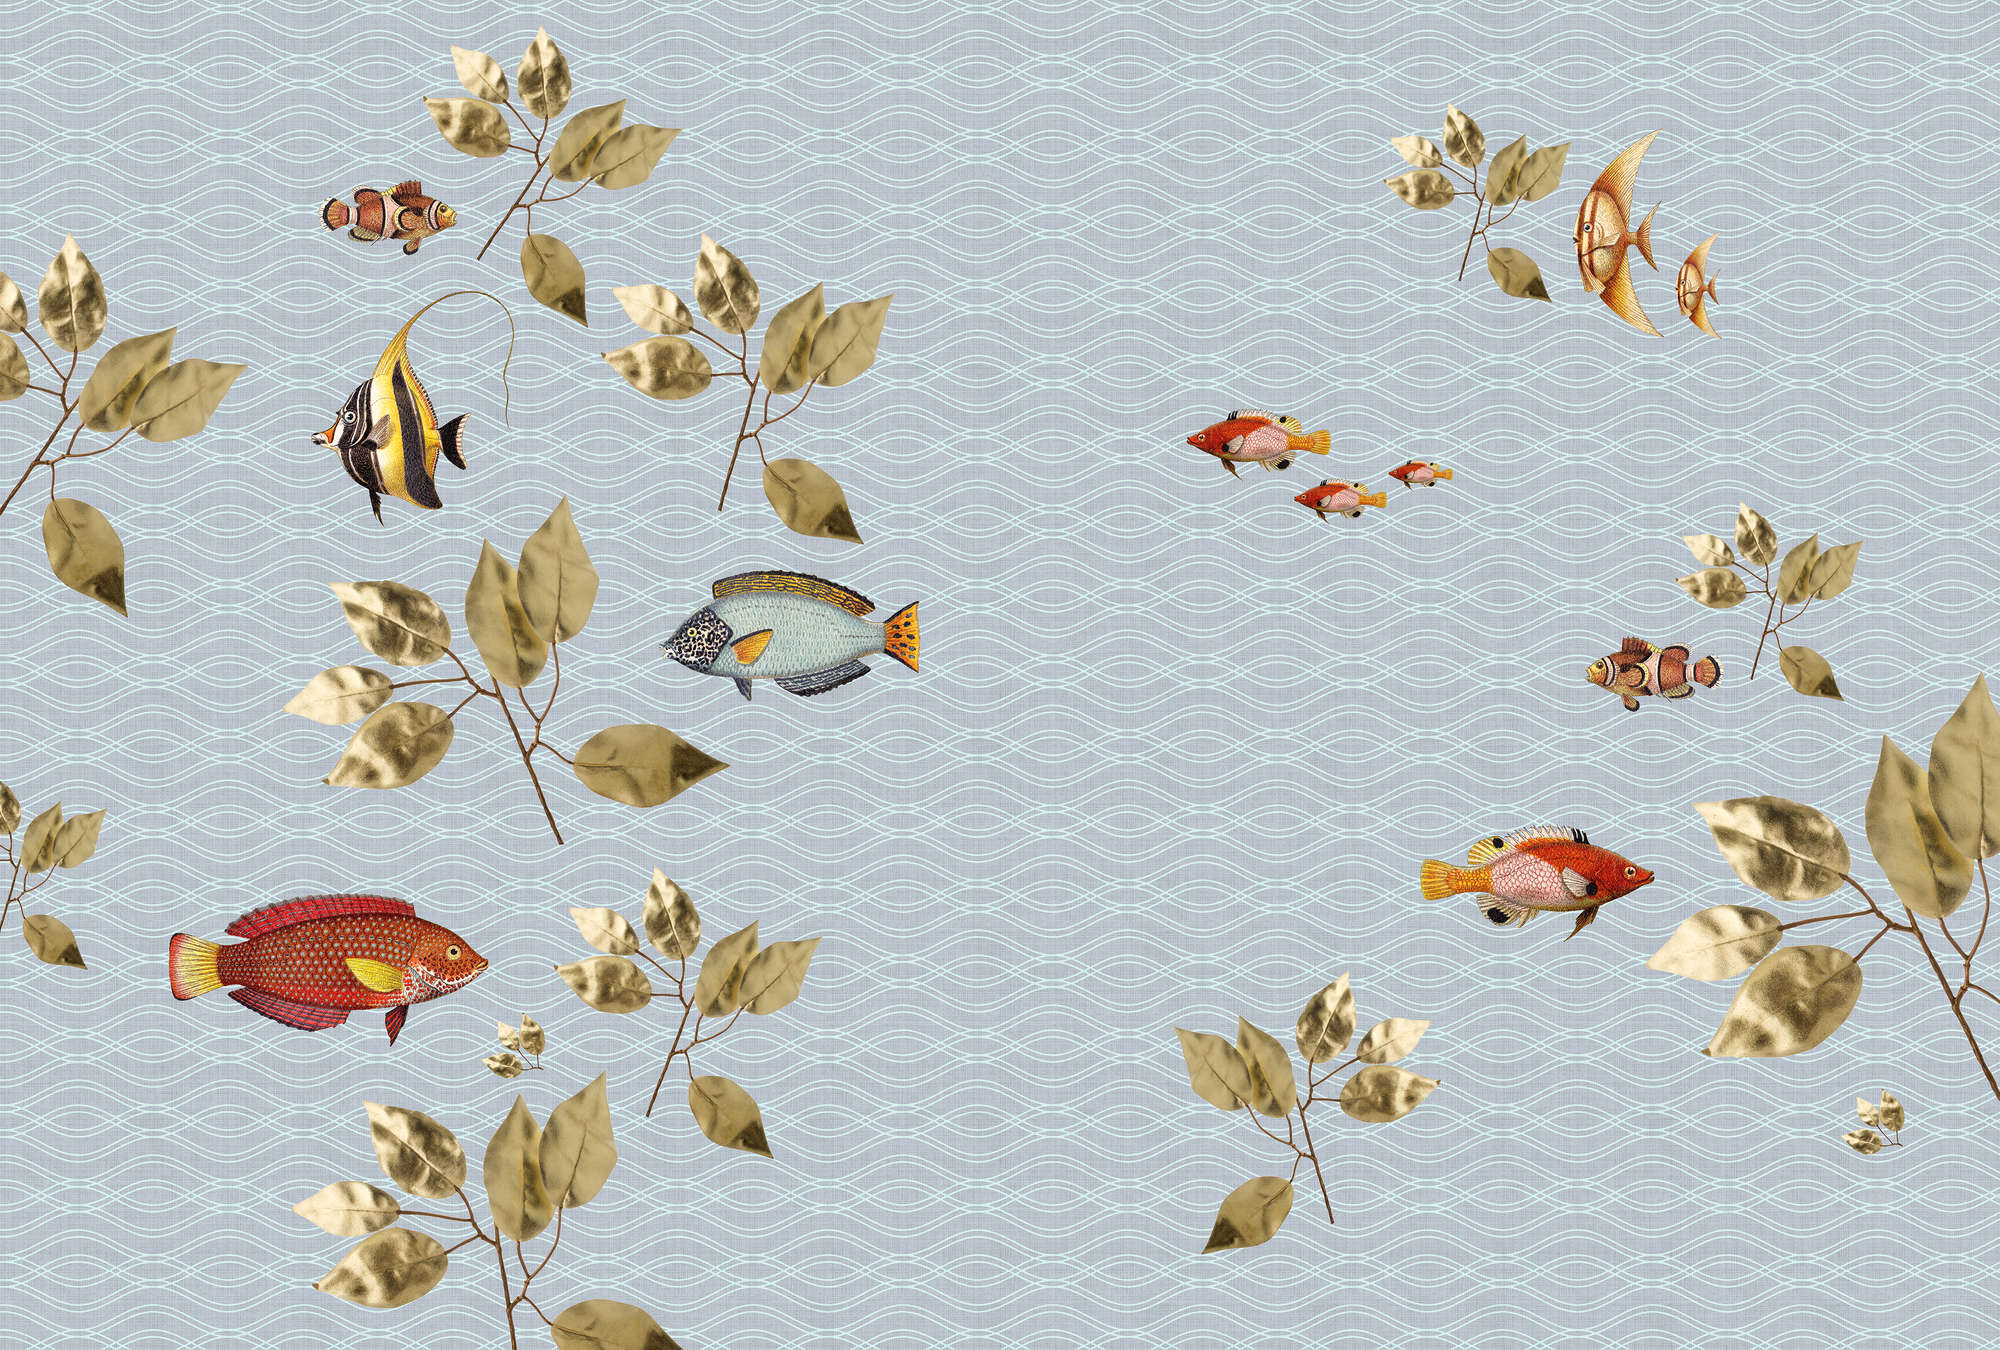             Brilliant fish 1 - Carta da parati a forma di pesce volante con struttura in lino naturale - Materiali non tessuto blu | Natura qualita consistenza
        